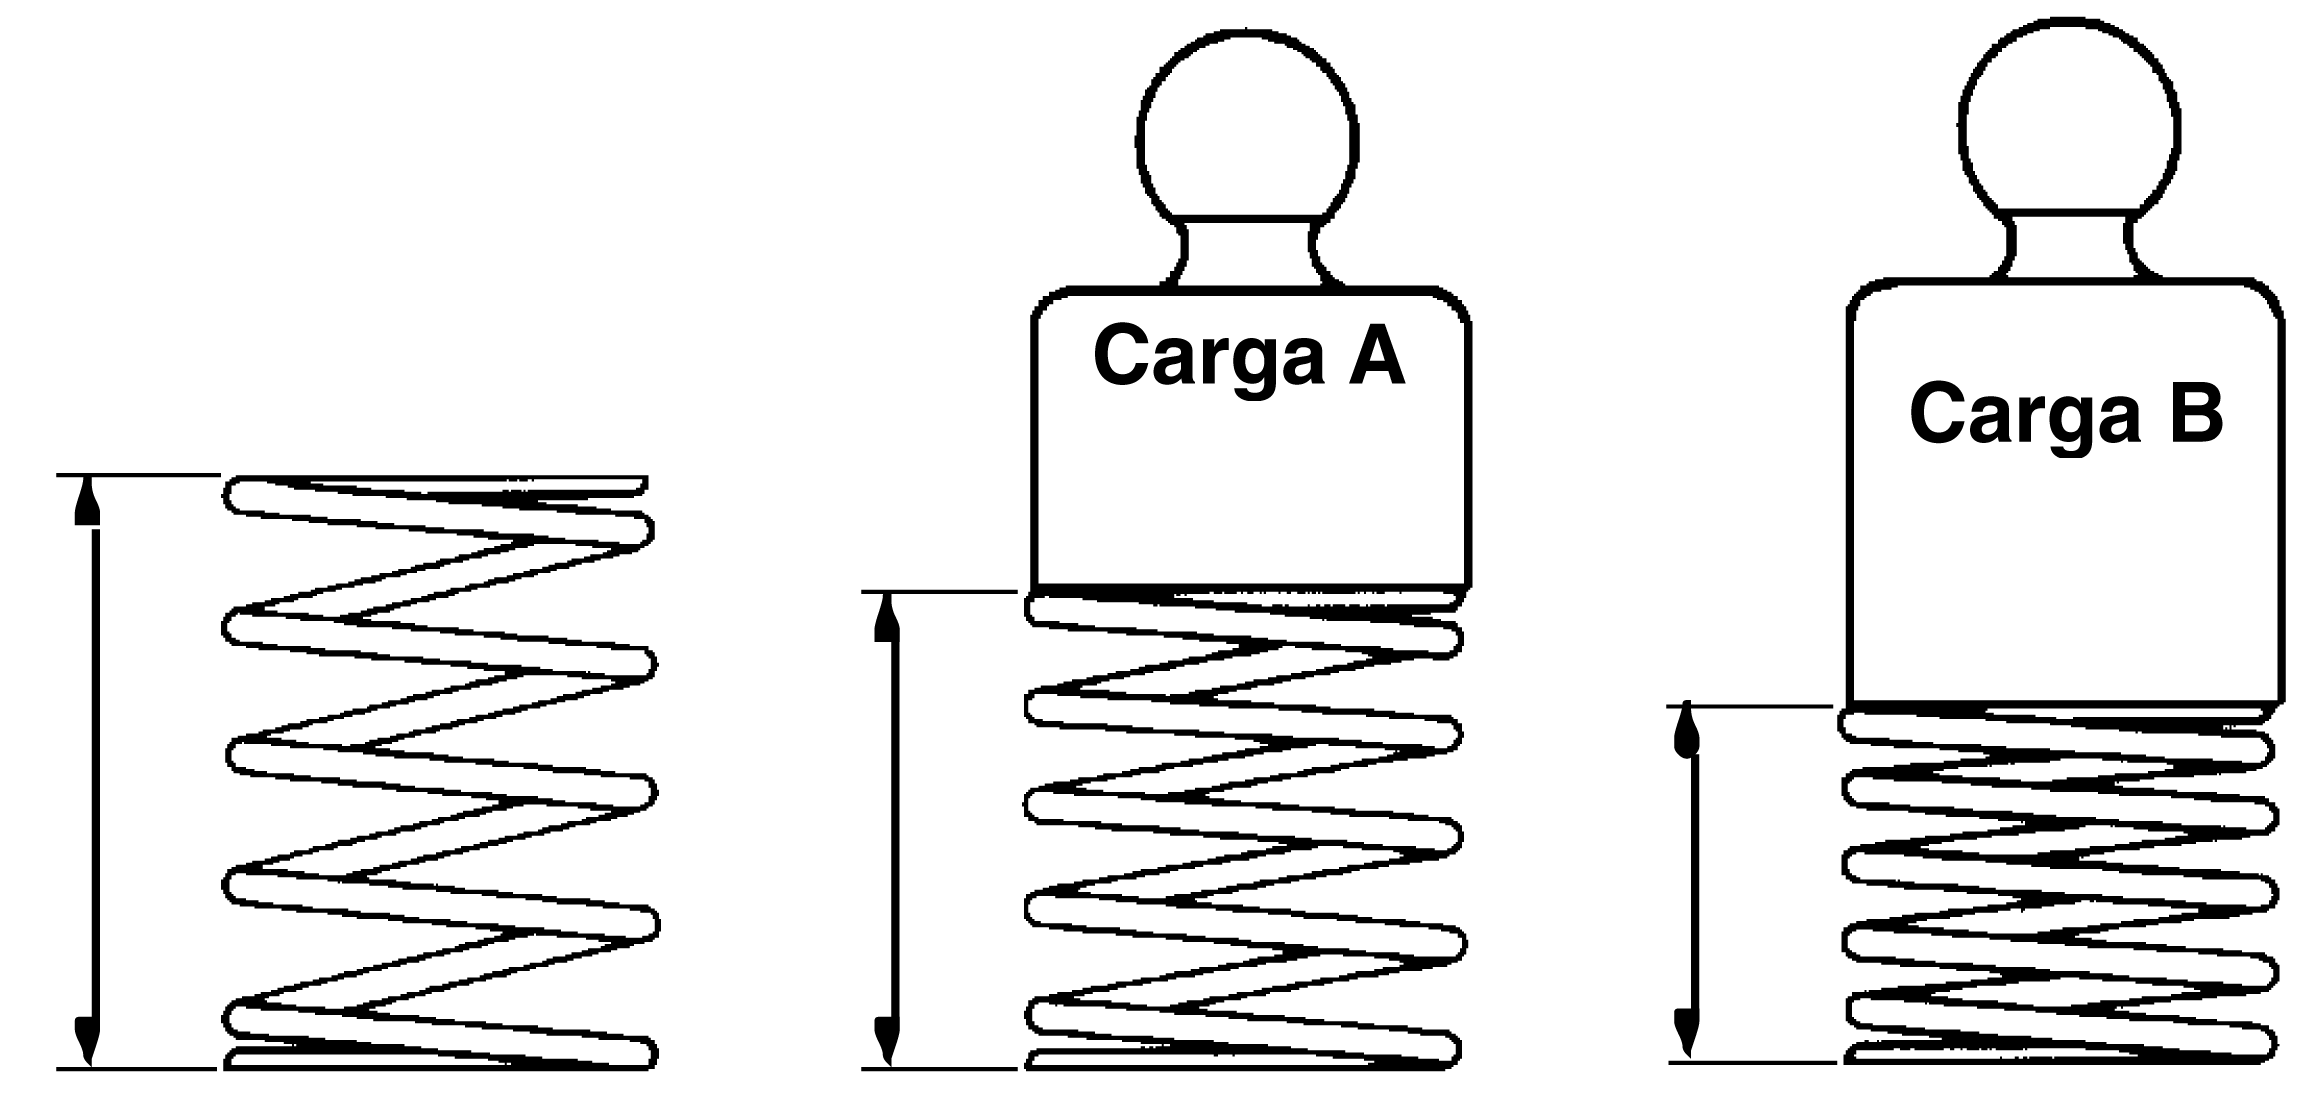 9-10 Cabeçotes SÉRIE 10 O teste é realizado colocando-se as molas no dispositivo especial e fazendo a leitura da força de fechamento para duas deflexões diferentes conforme mostra a tabela a seguir.